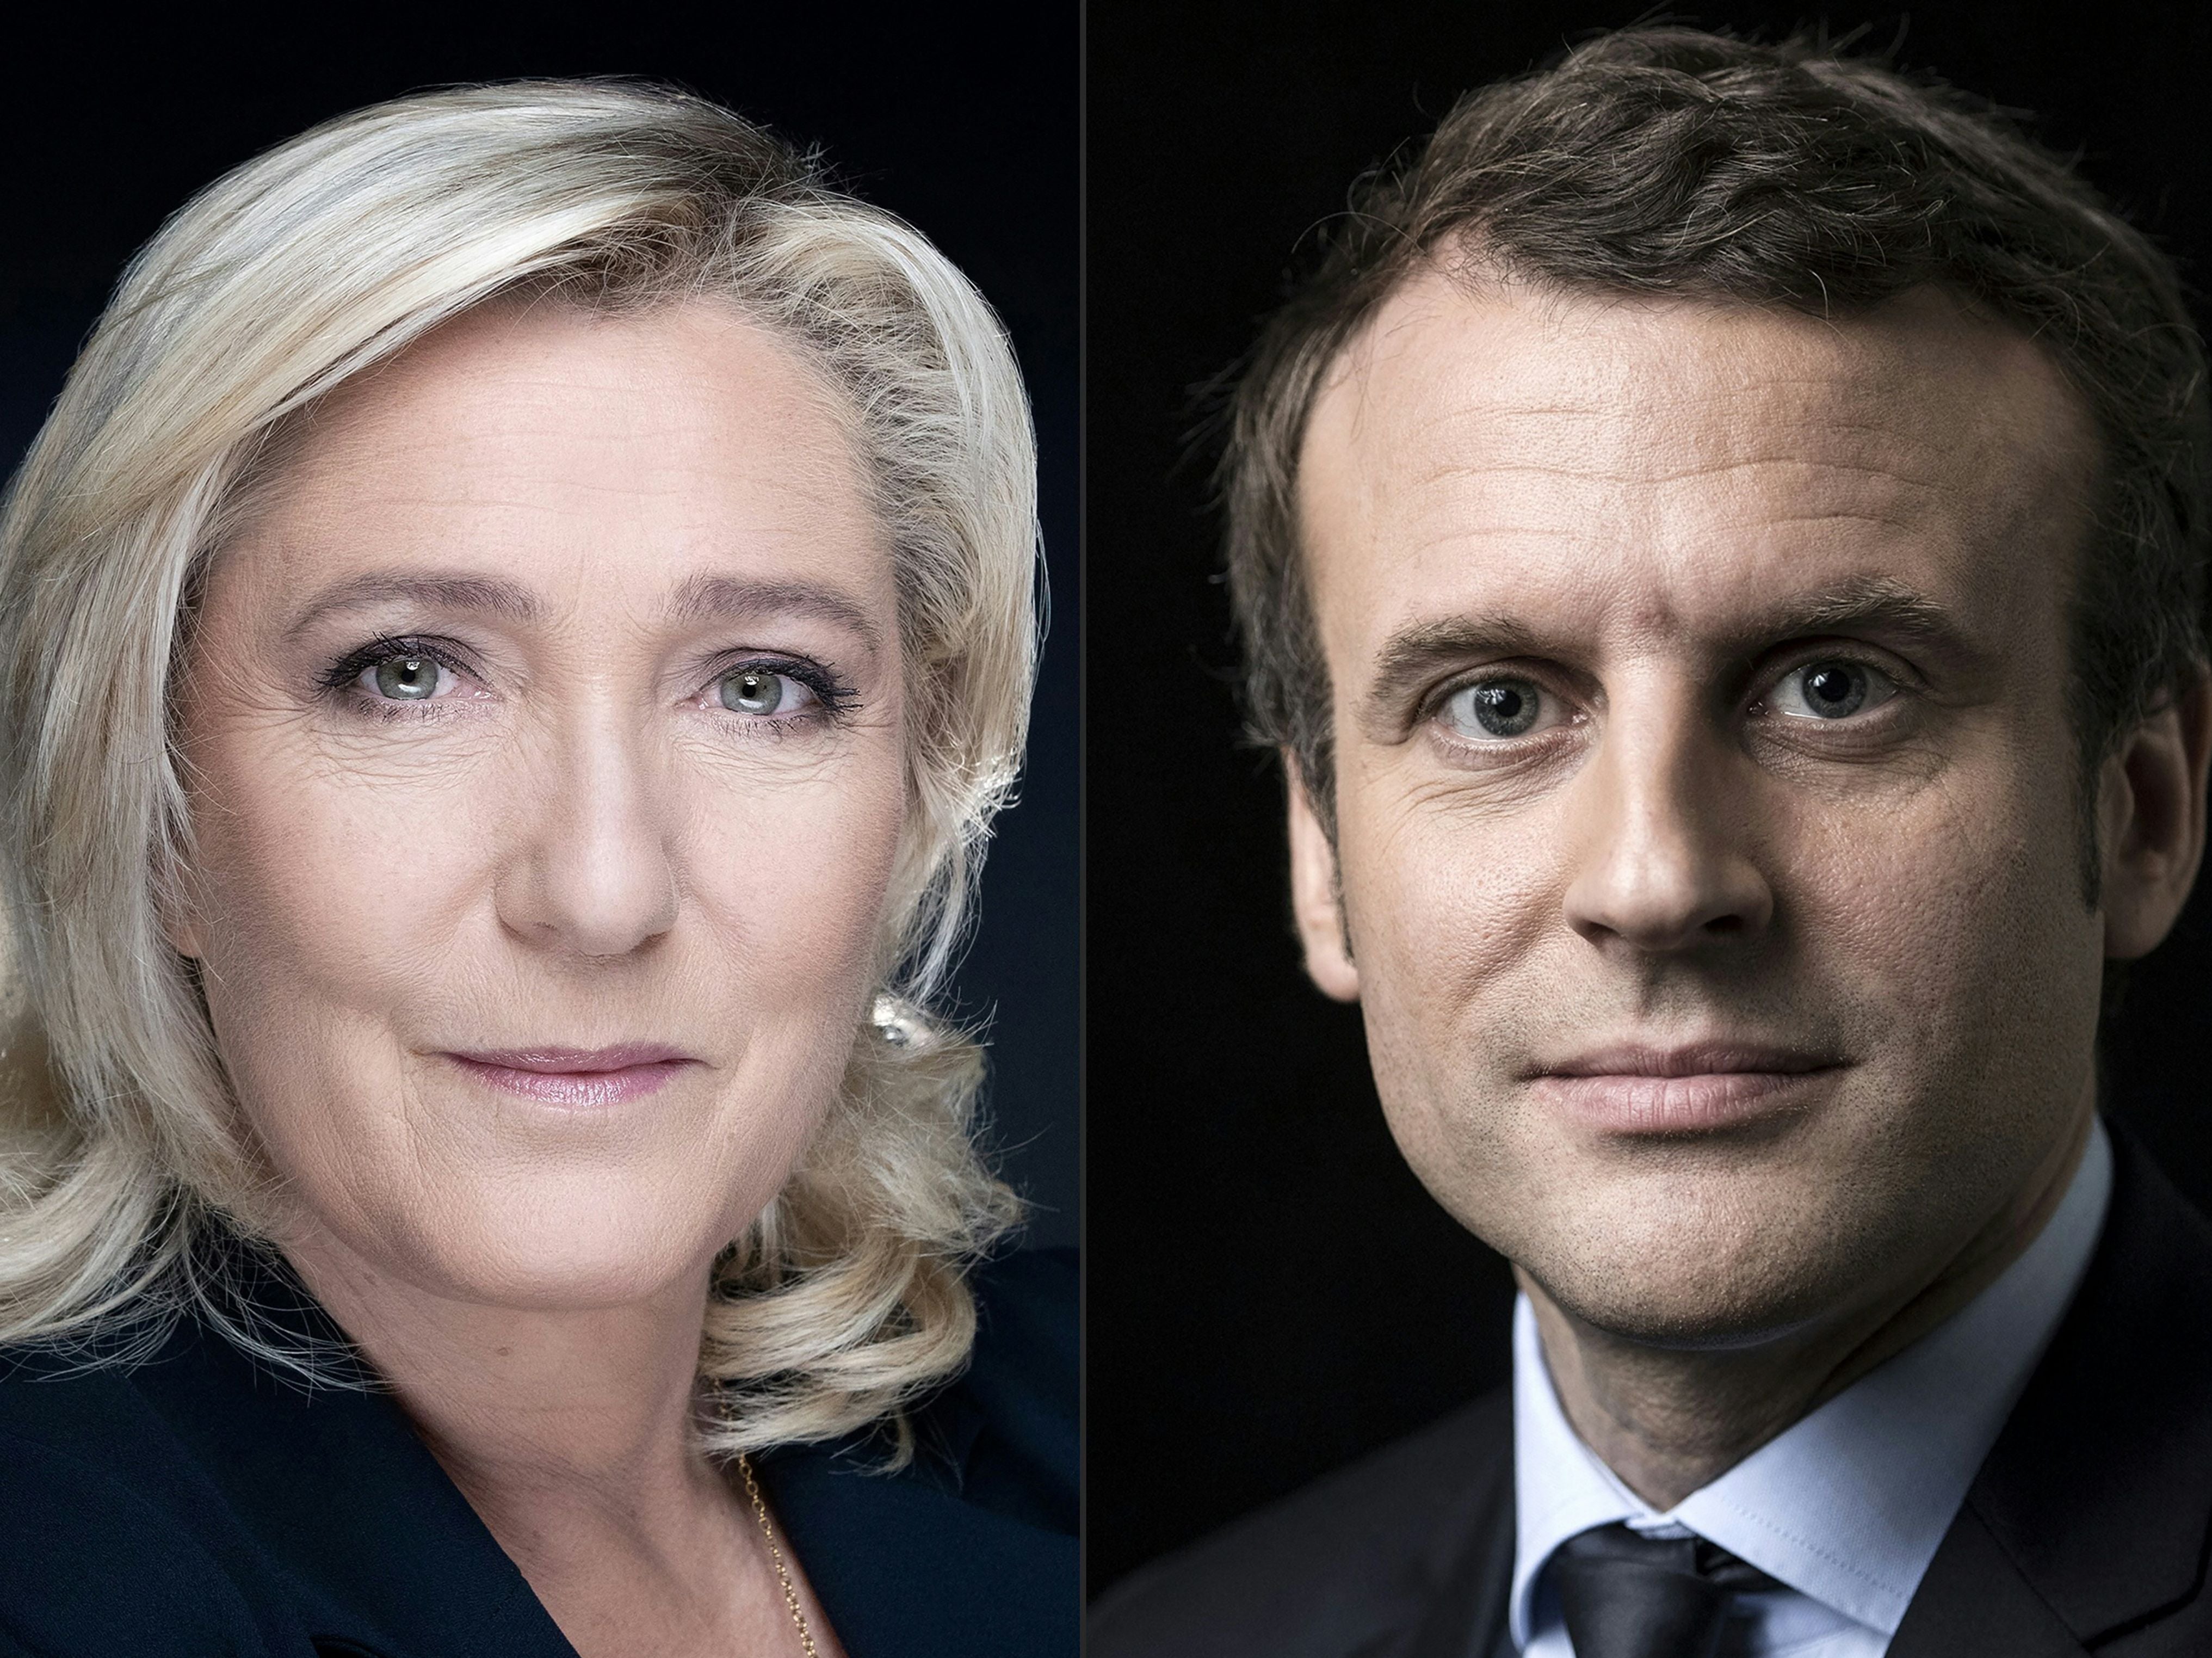 Marine Le Pen y Emmanuel Macron se enfrentarán en una segunda vuelta de la elección presidencial en Franvia, según las proyecciones tras la primera vuelta